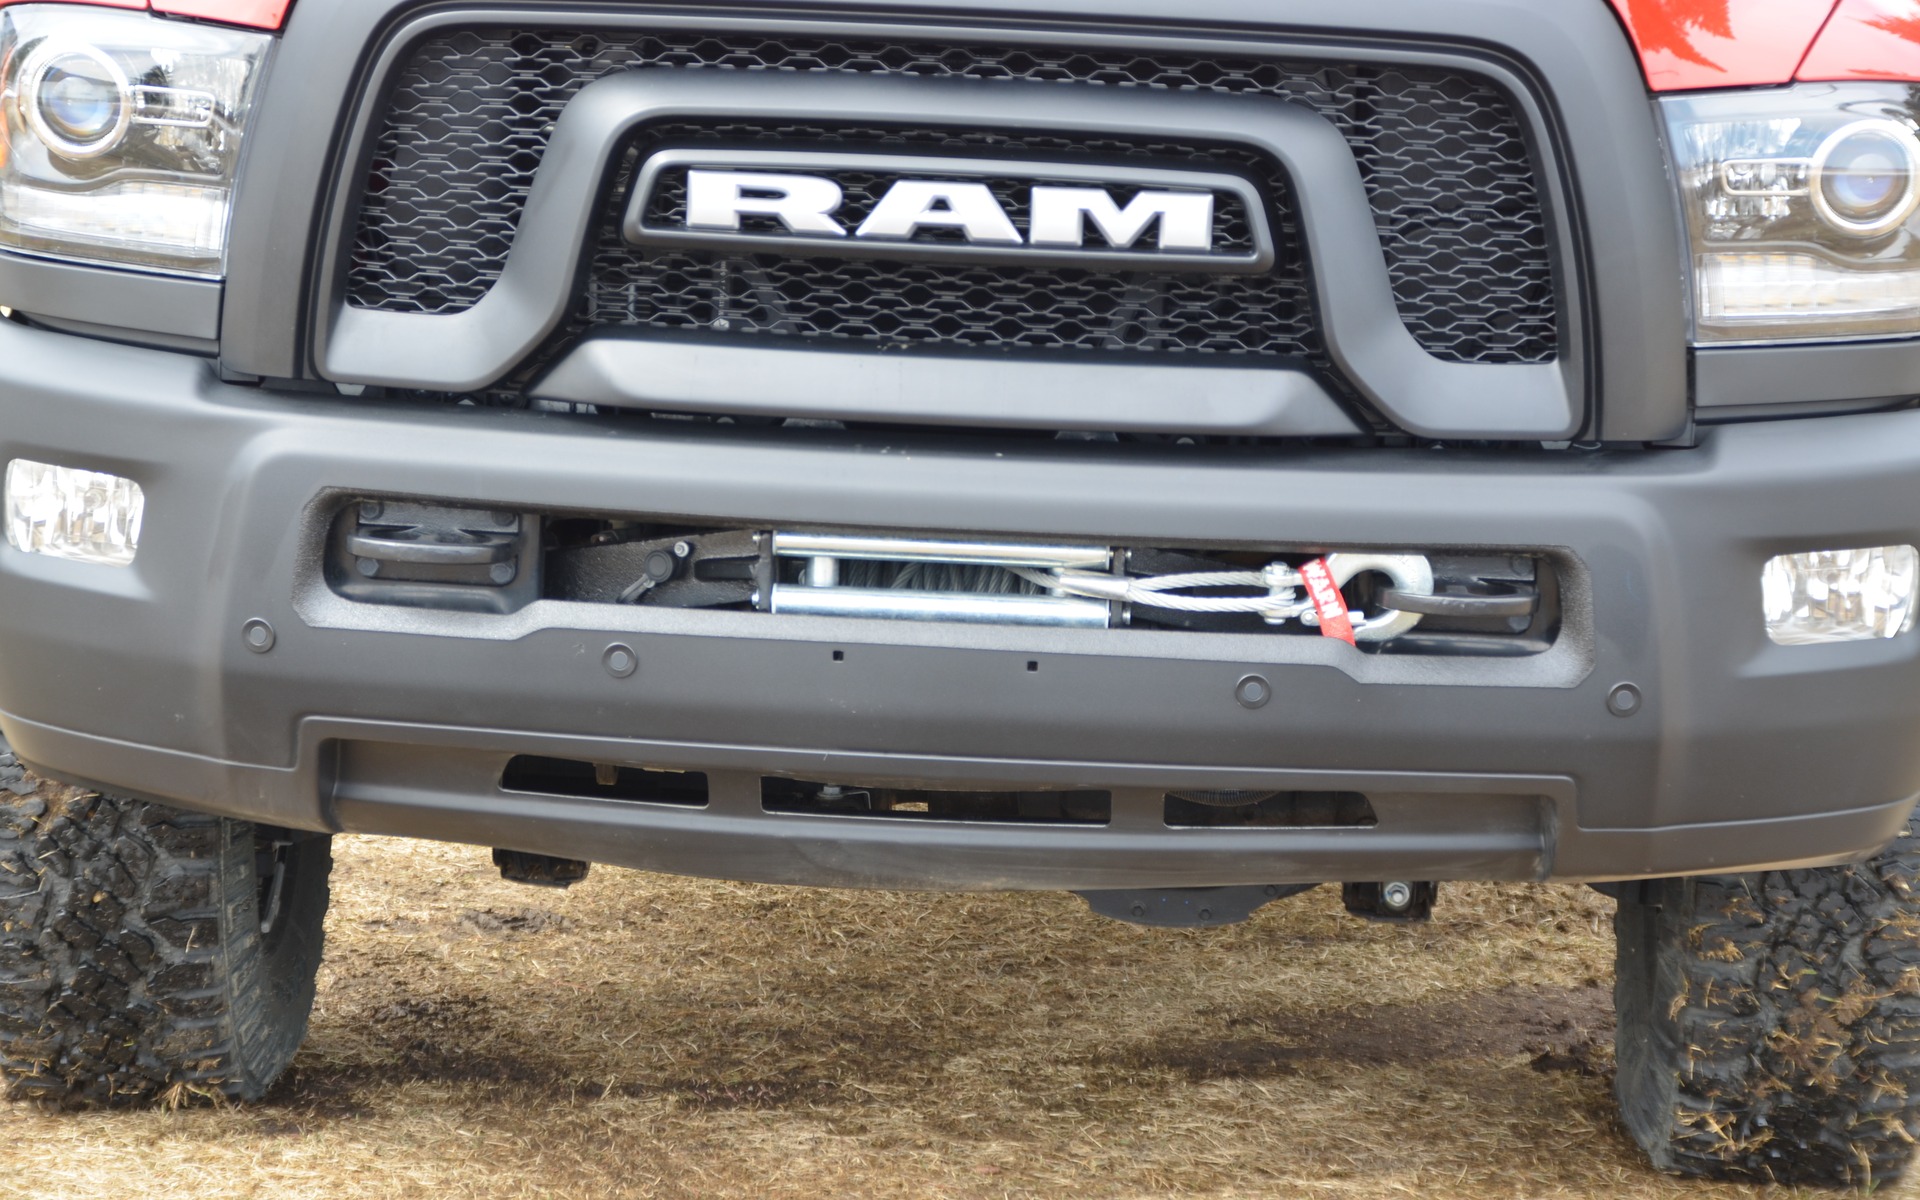 <p>2017 Ram 2500 Power Wagon</p>